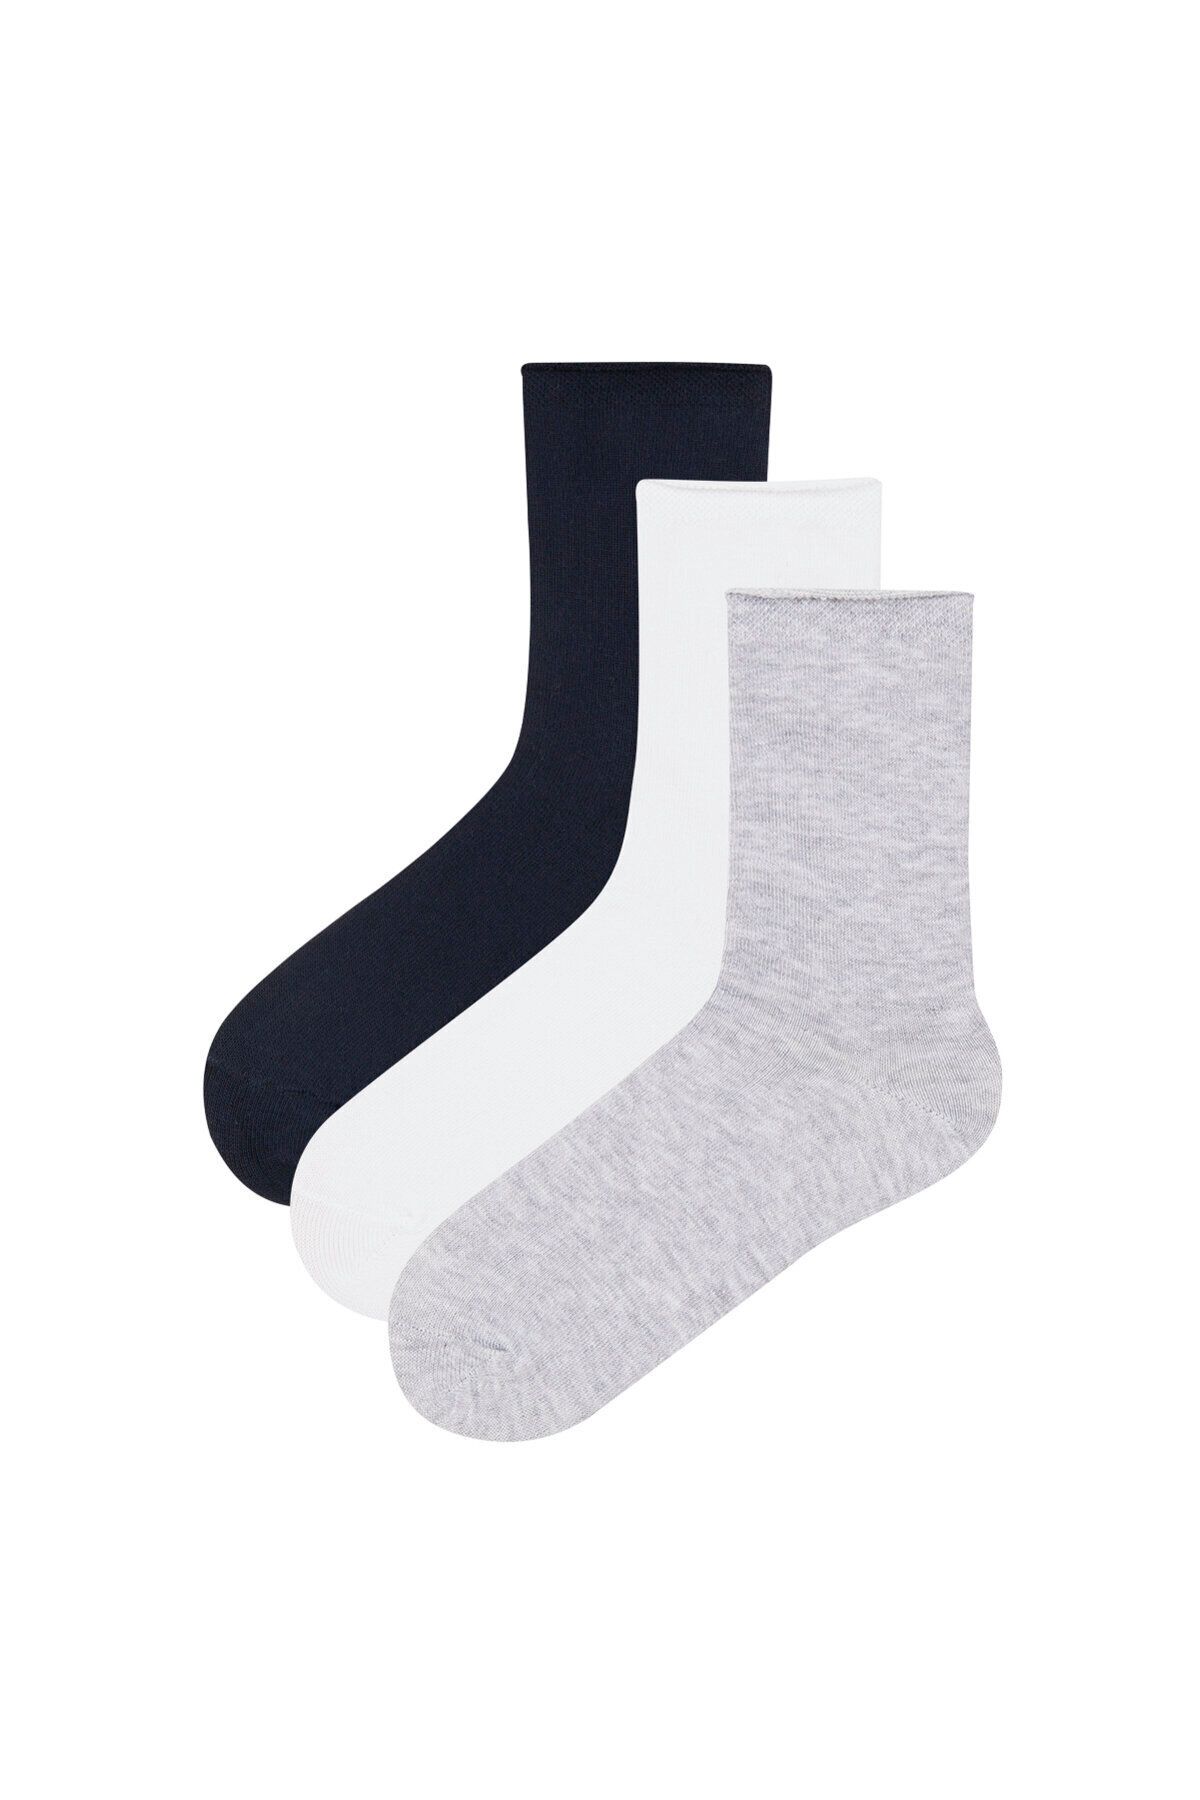 Penti Lacivert Kız Çocuk Basic 3lü Soket Çorap